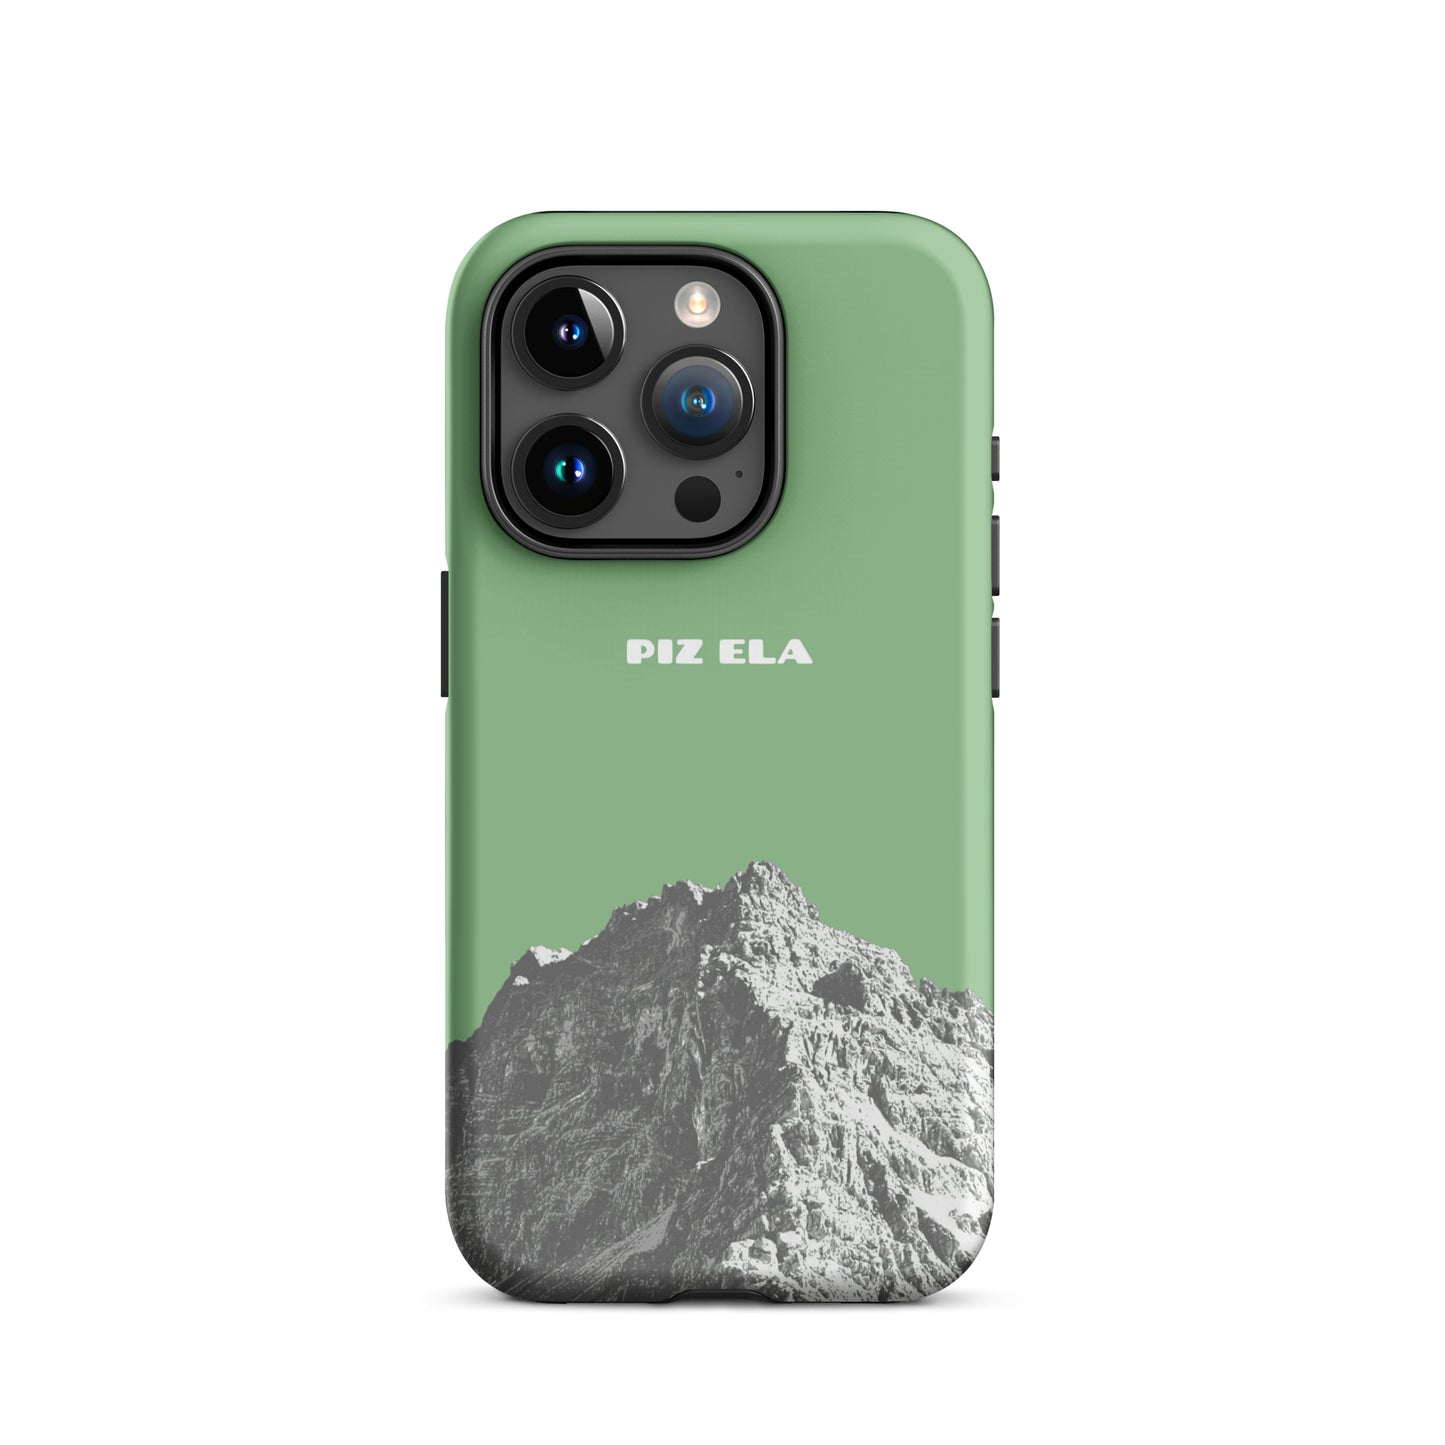 iPhone Case - Piz Ela - Hellgrün